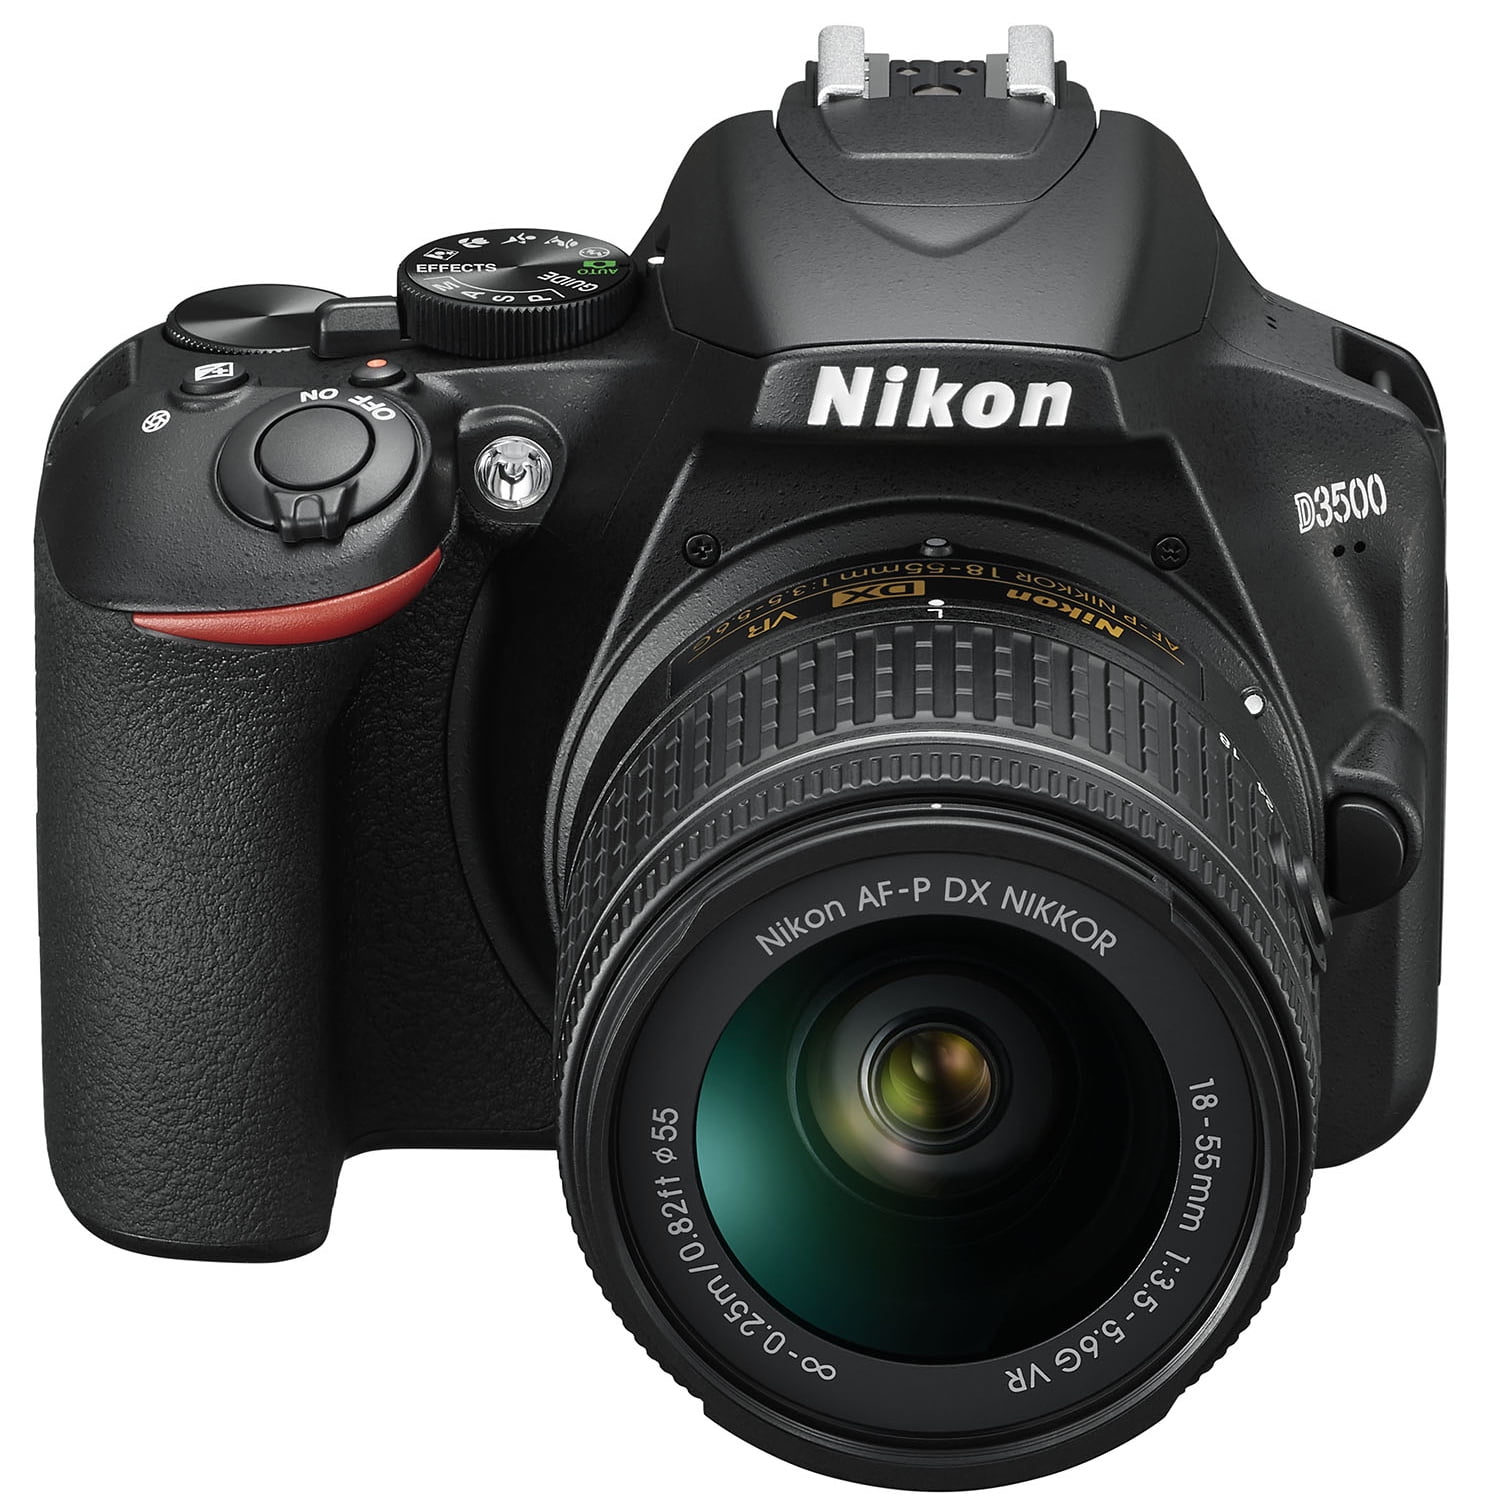 Nikon D3500 DSLR Camera with 2 Lens NIKKOR AF-P DX 18-55mm f/3.5-5.6G VR  and 70-300mm f/4.5-6.3G ED Dual Zoom Lens Kit + 500mm Preset f/8 Telephoto  Lens + 0.43x Wide Angle, 2.2X